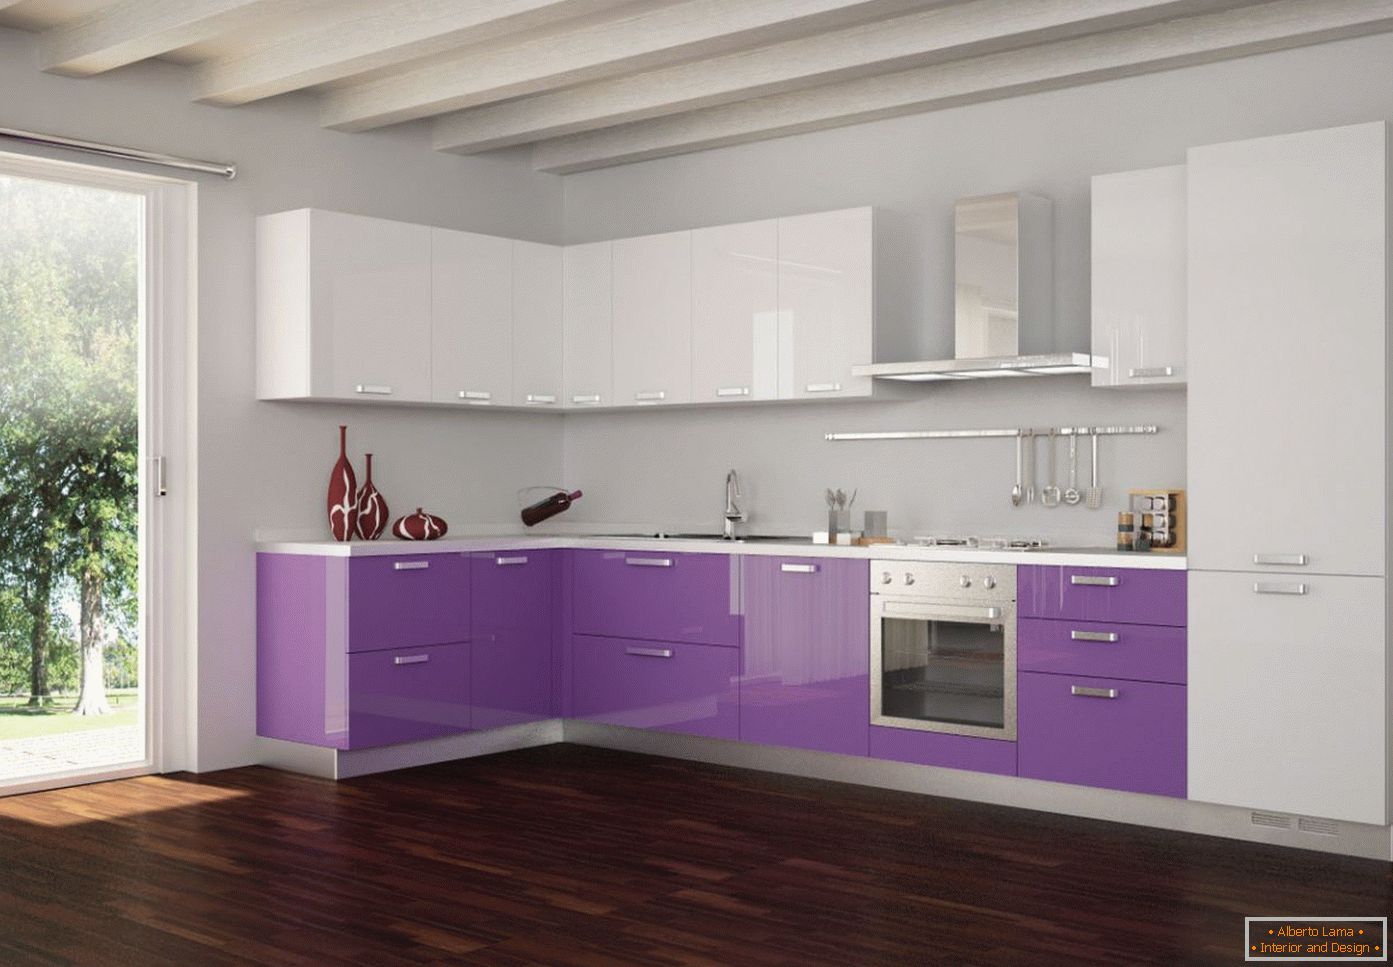 Violet et blanc dans la conception de la cuisine